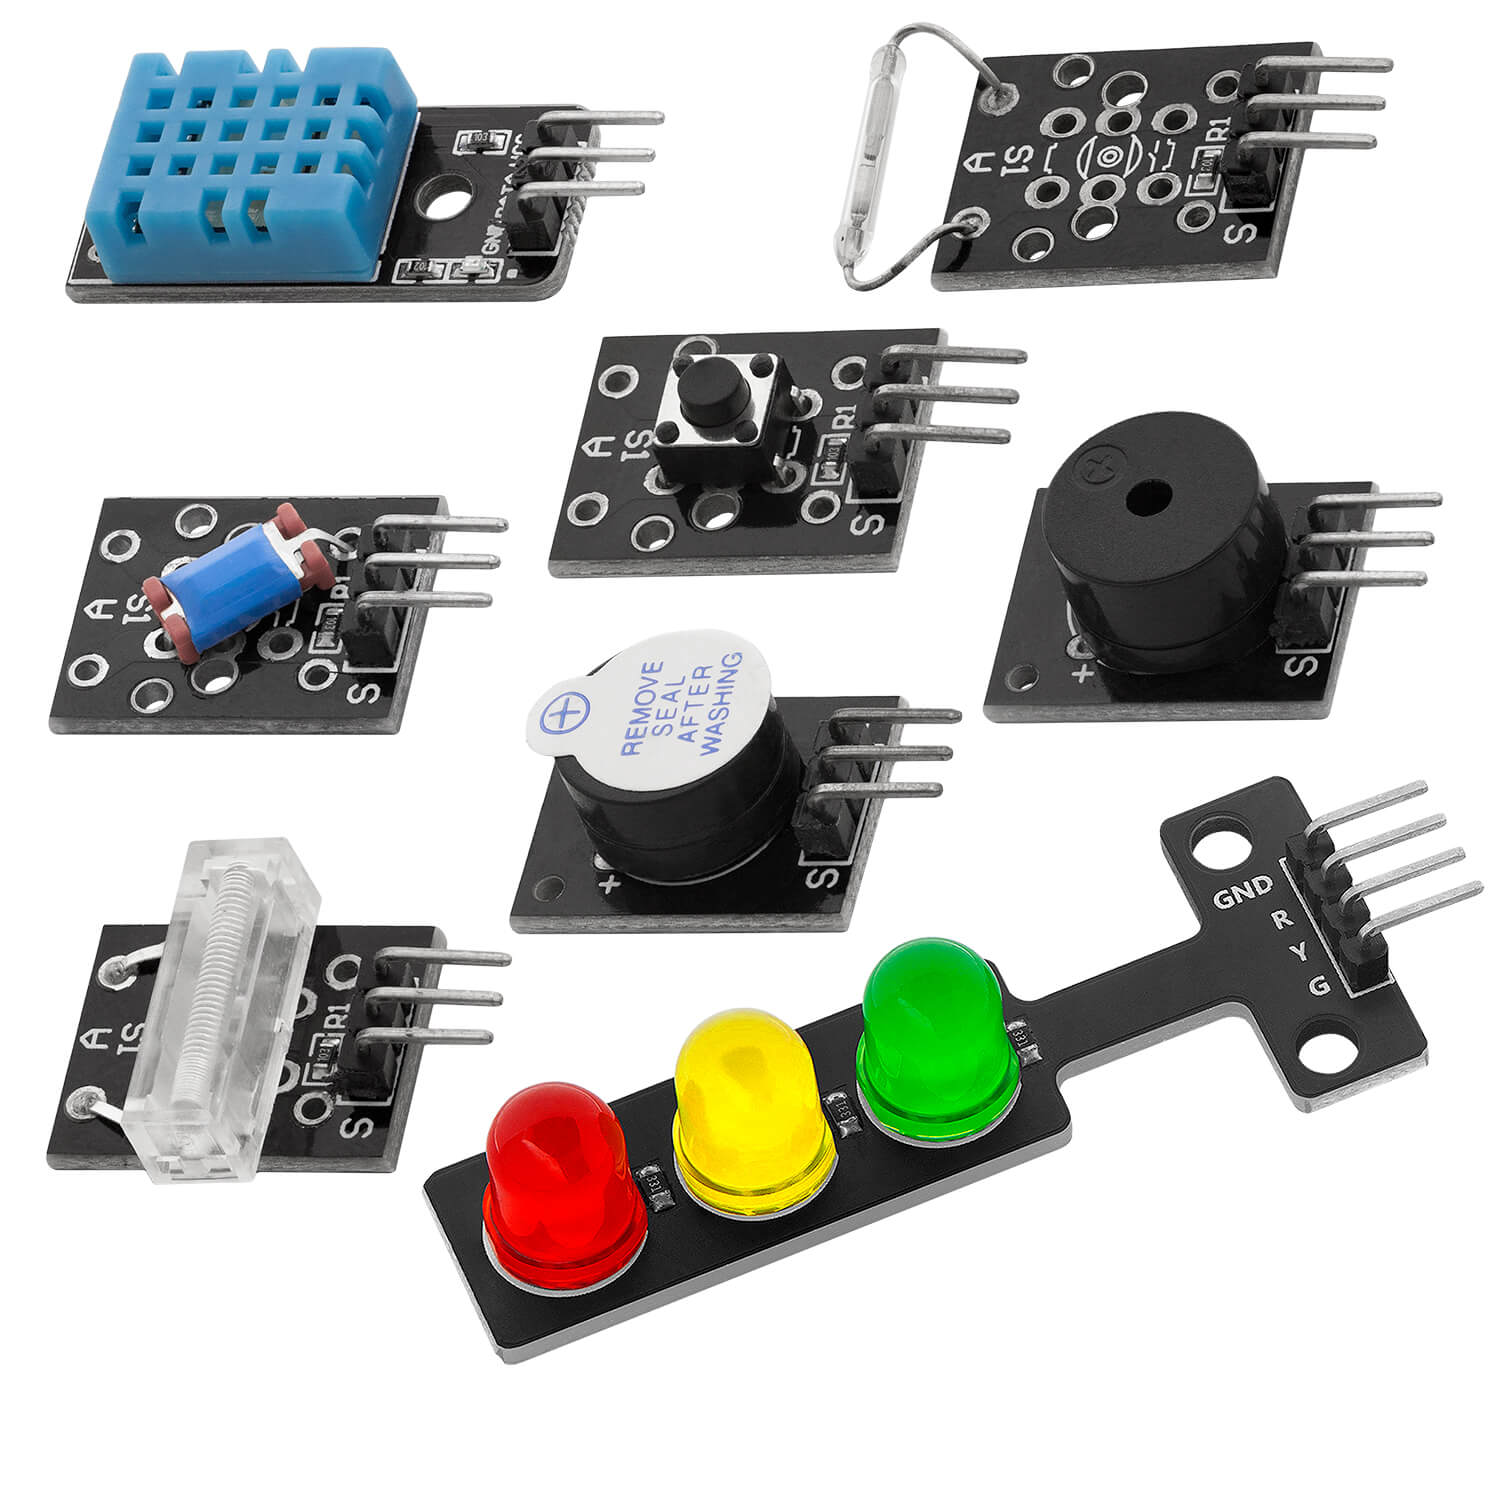 Kit de module de capteur 35 en 1 et kit d'accessoires compatible avec Arduino et Raspberry Pi